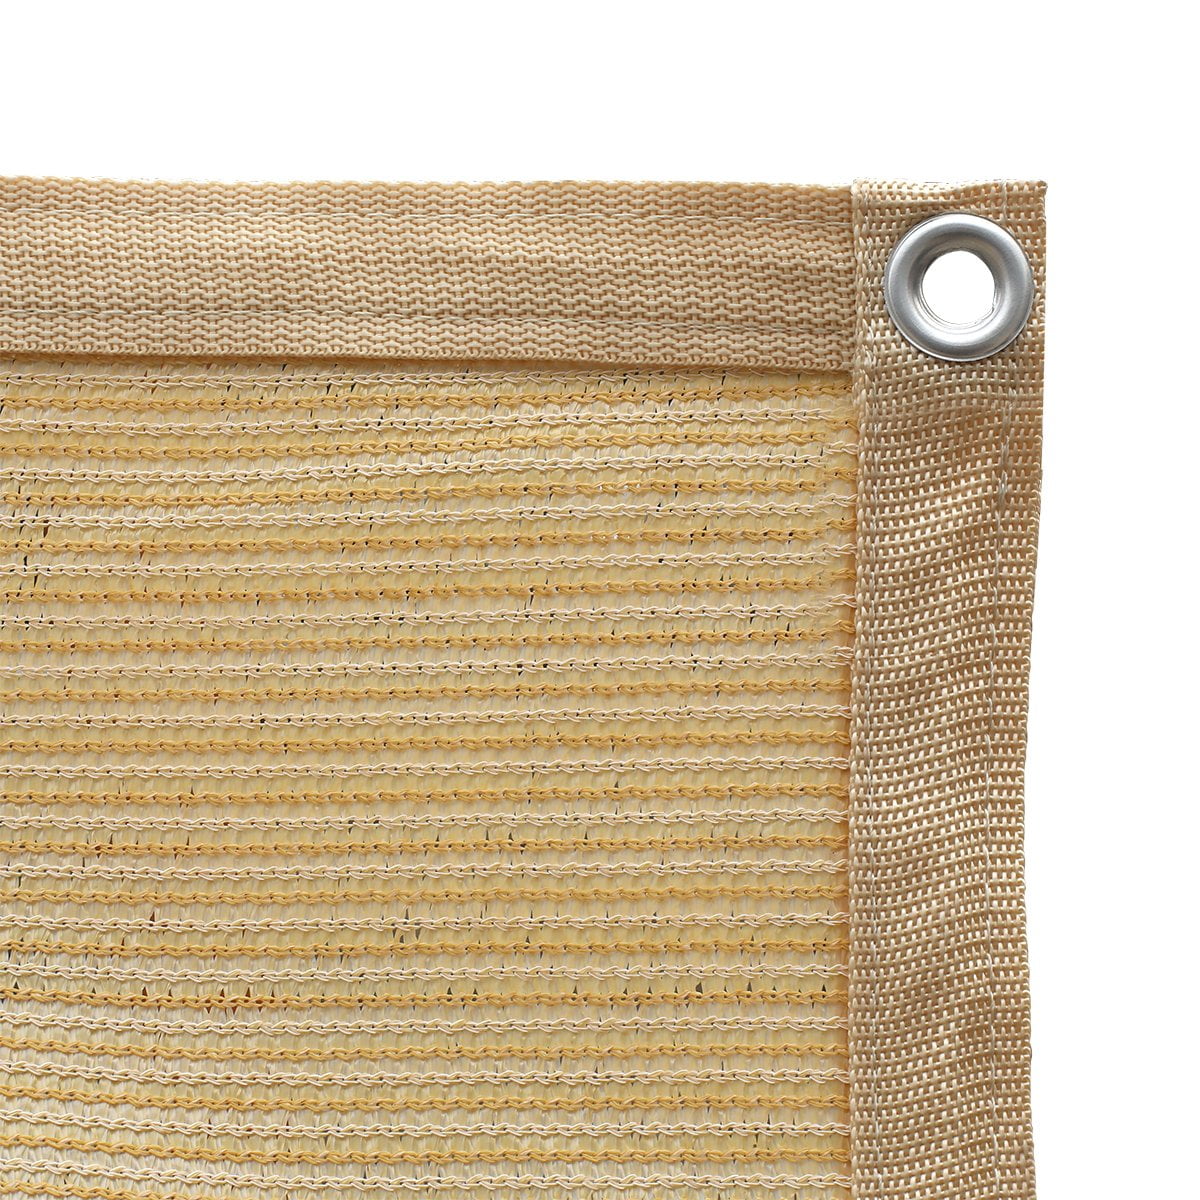 Shatex Shade Panel Block 90%UV Rays with Ready-tie up Ribbon for Pergola Grey 